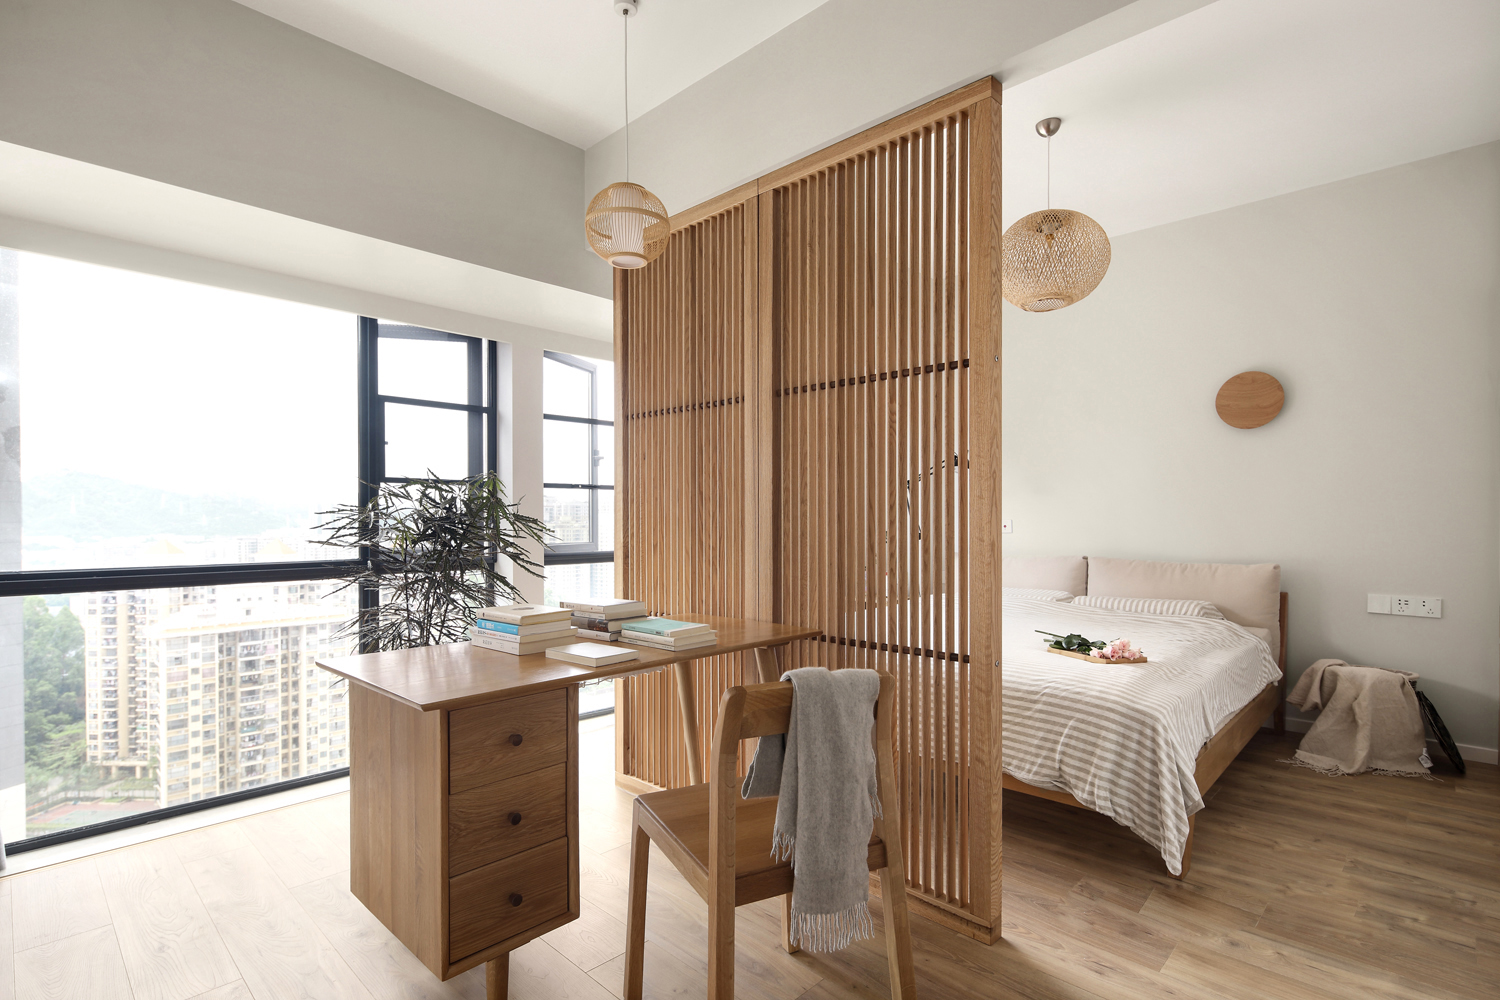 卧室采用白色和木色打造，巧妙运用隔断划分睡眠区和工作区，使得整个空间宽敞而舒适。